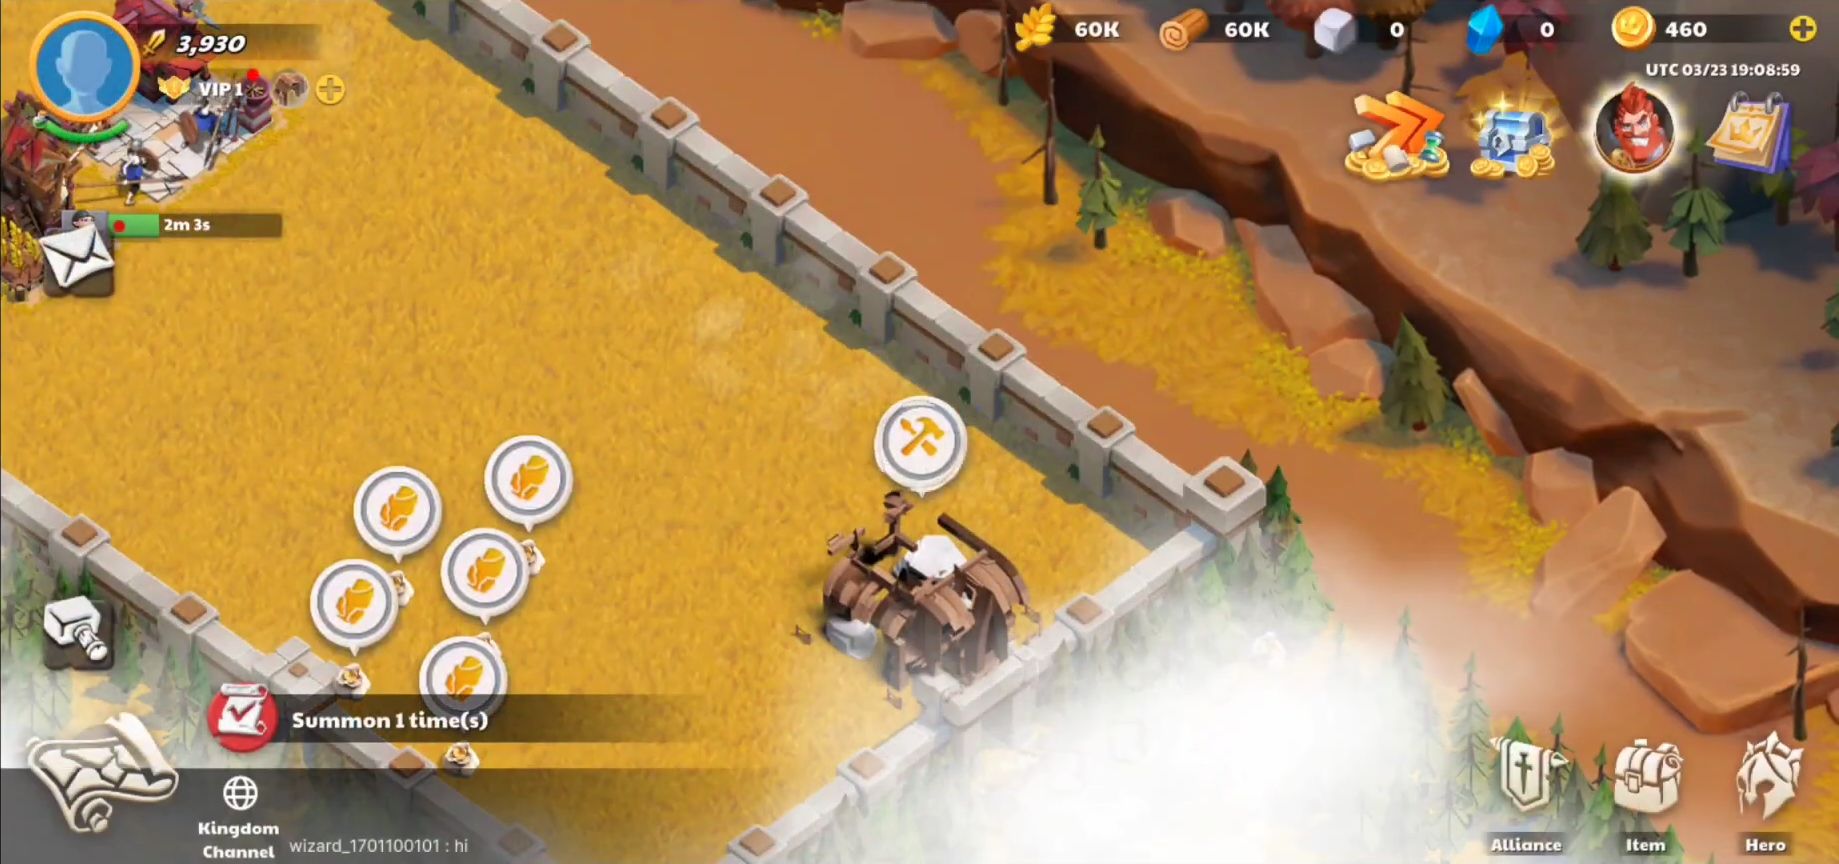 War of Myths: The Magic Era - Android game screenshots.